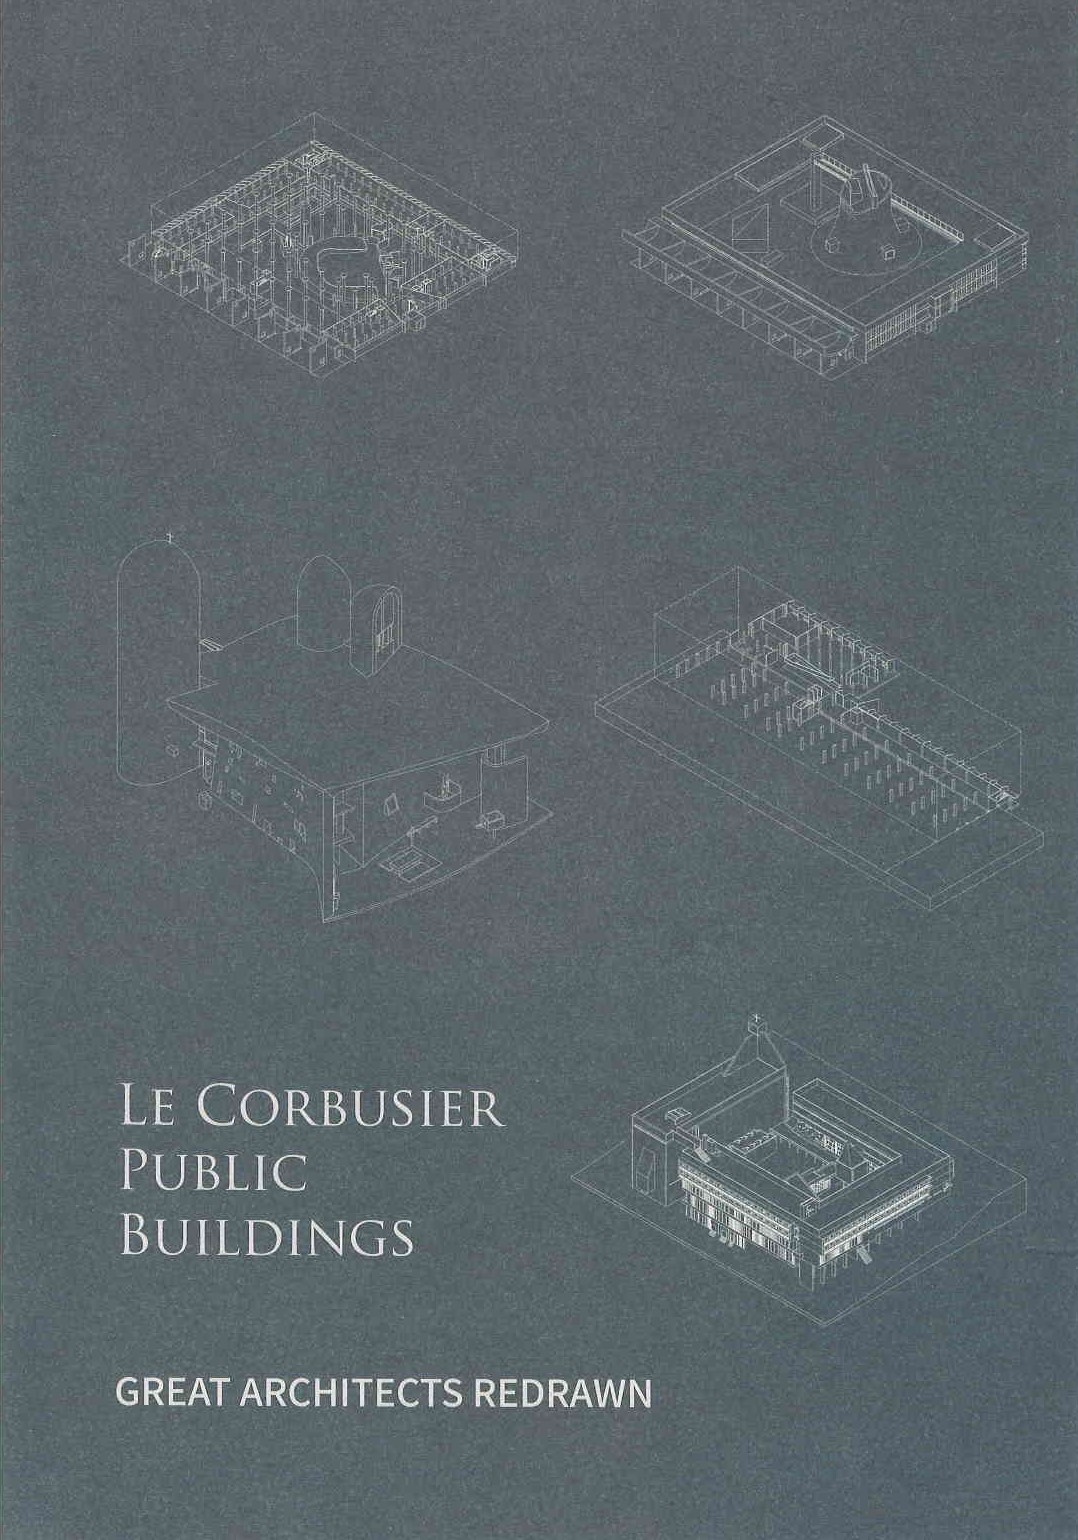 Le Corbusier public buildings